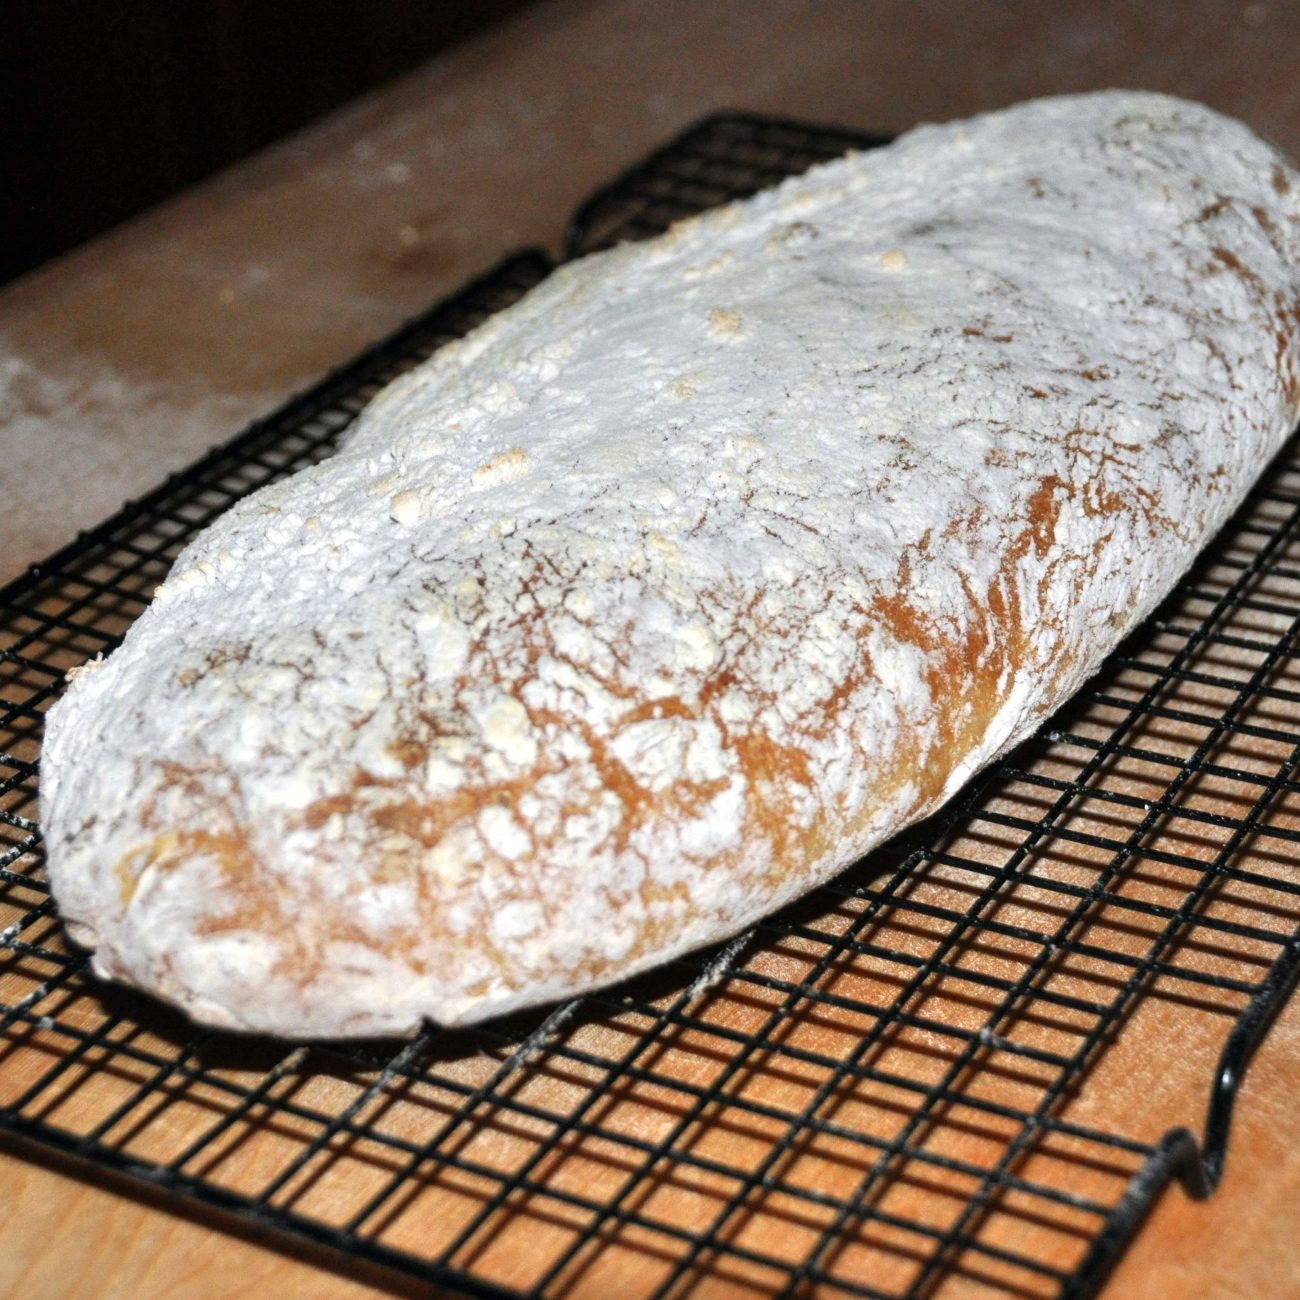 Video Recipe for Ciabatta bread baked in a brick oven